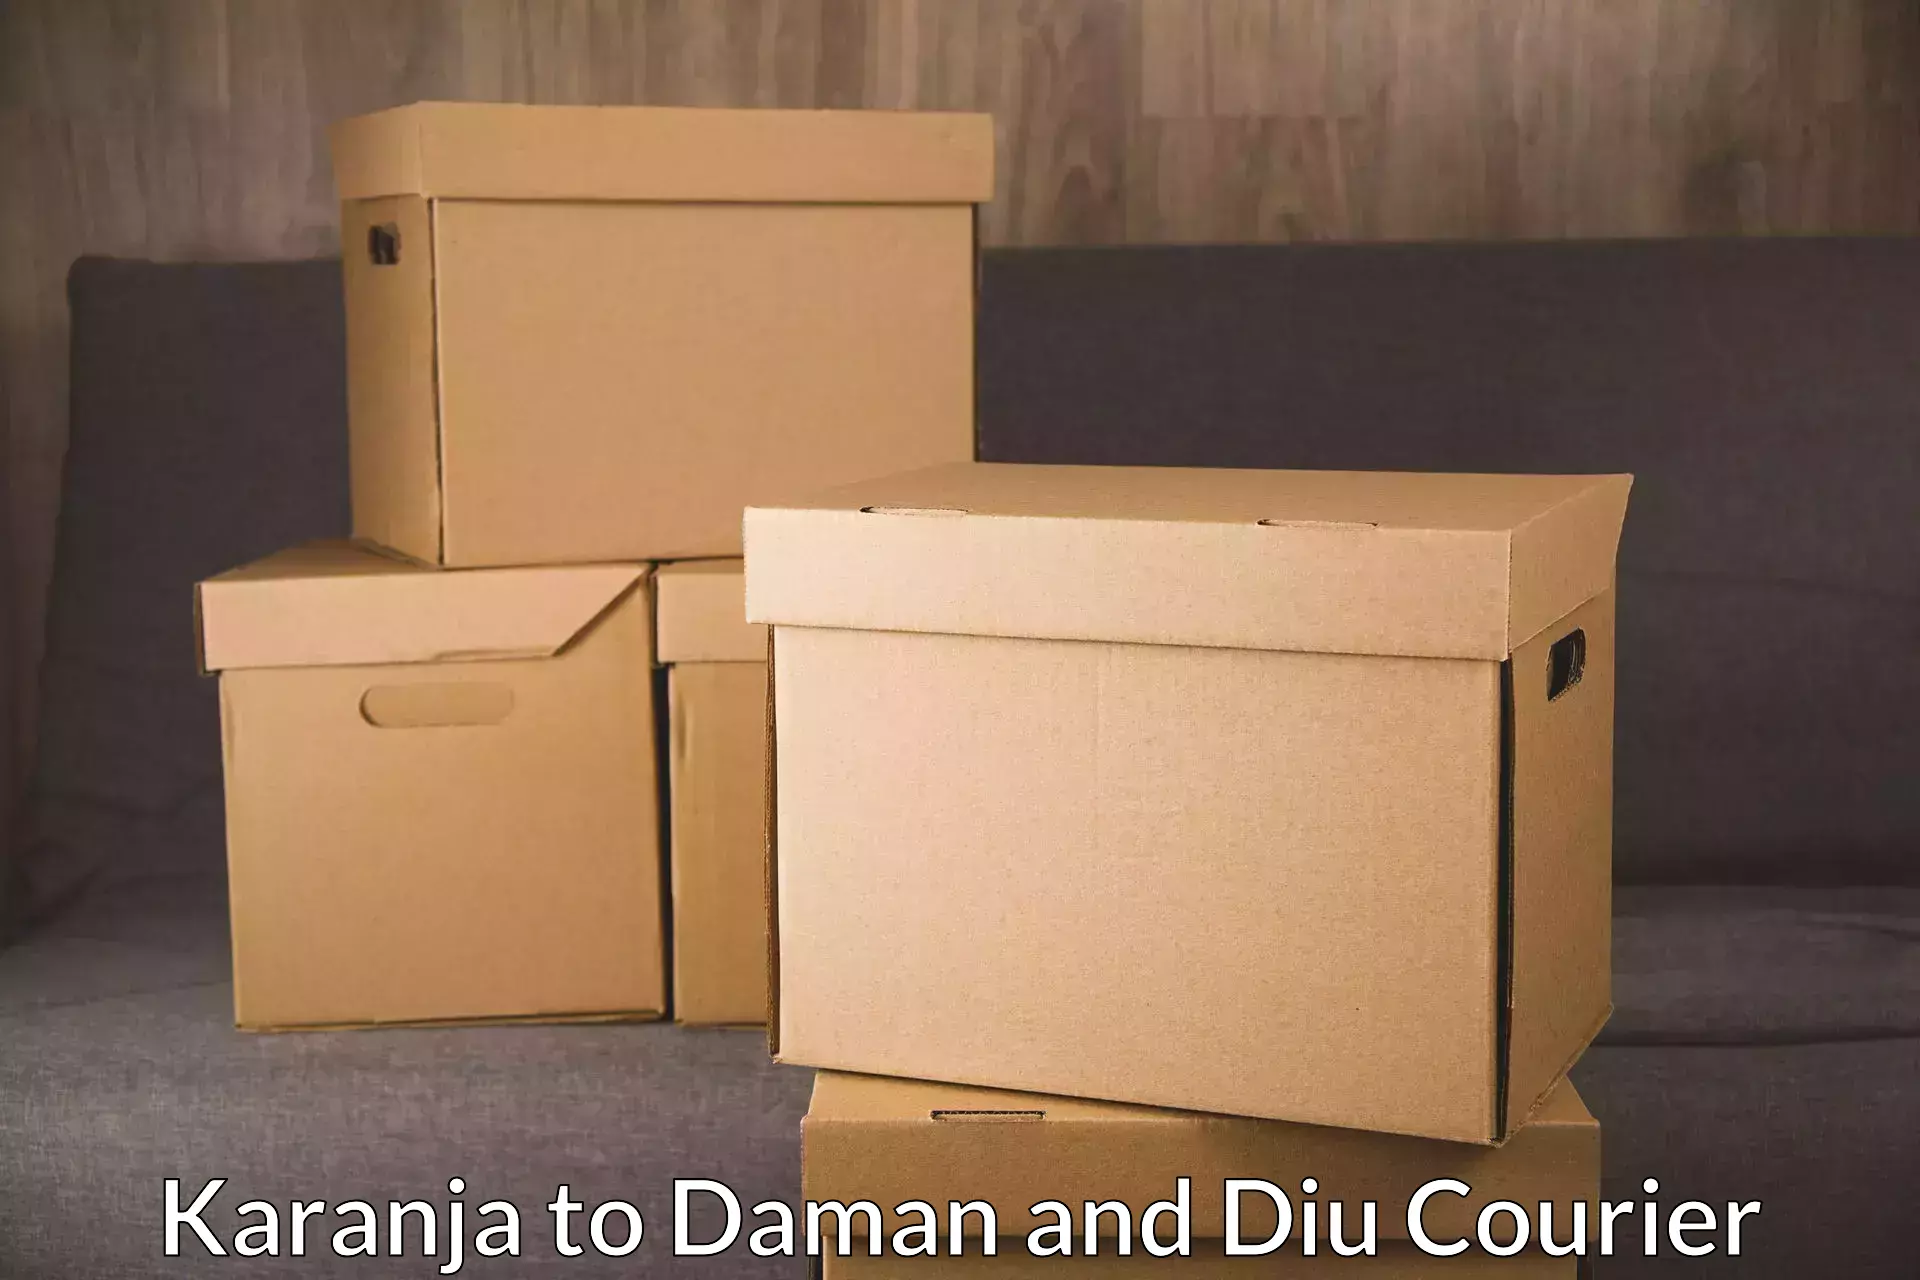 Express mail service Karanja to Daman and Diu